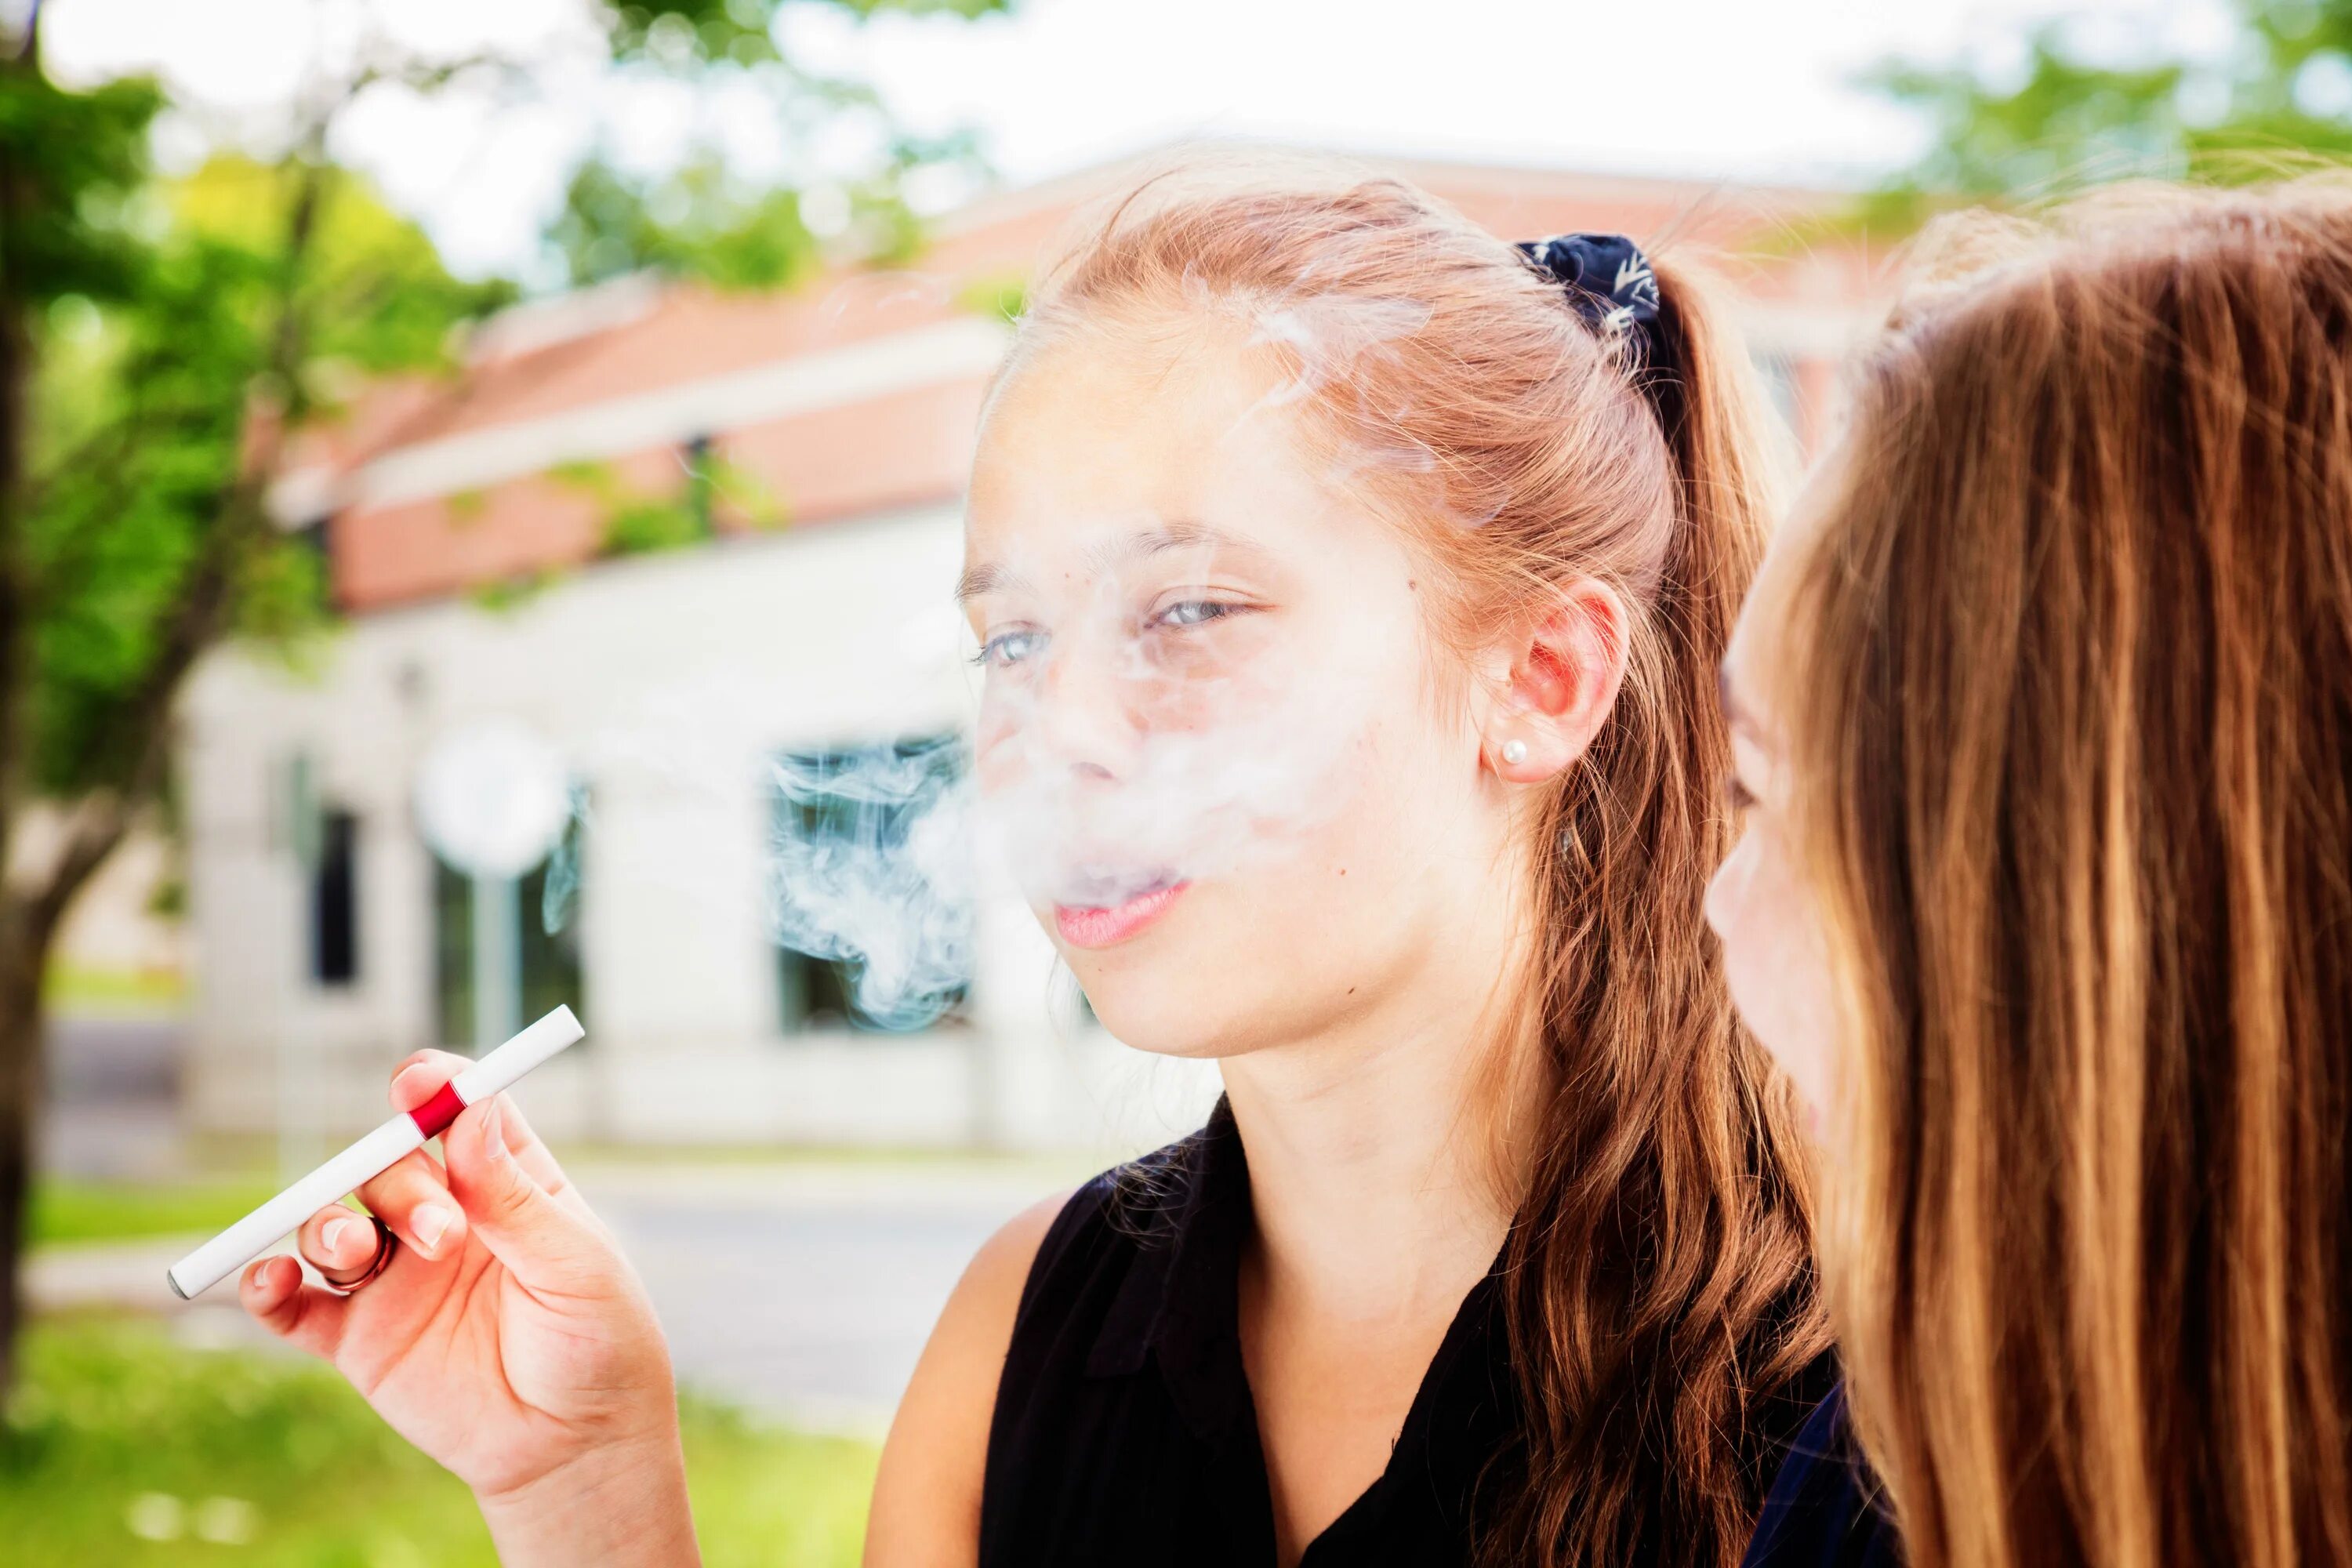 Курящий подросток. Подросток с сигаретой. Курящая девушка подросток. Девочки подростки курят.